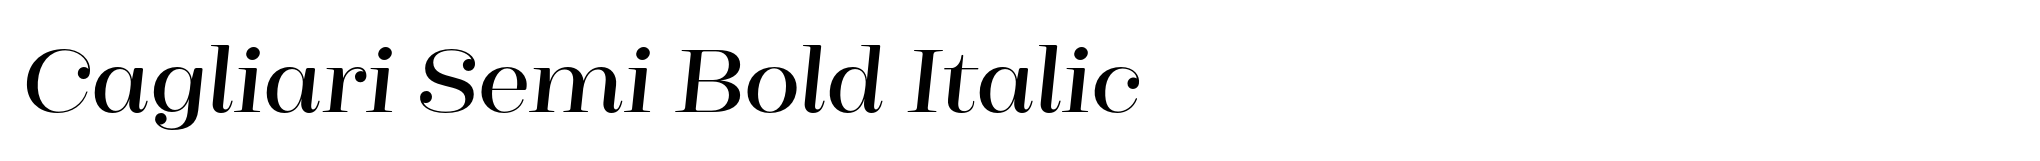 Cagliari Semi Bold Italic image